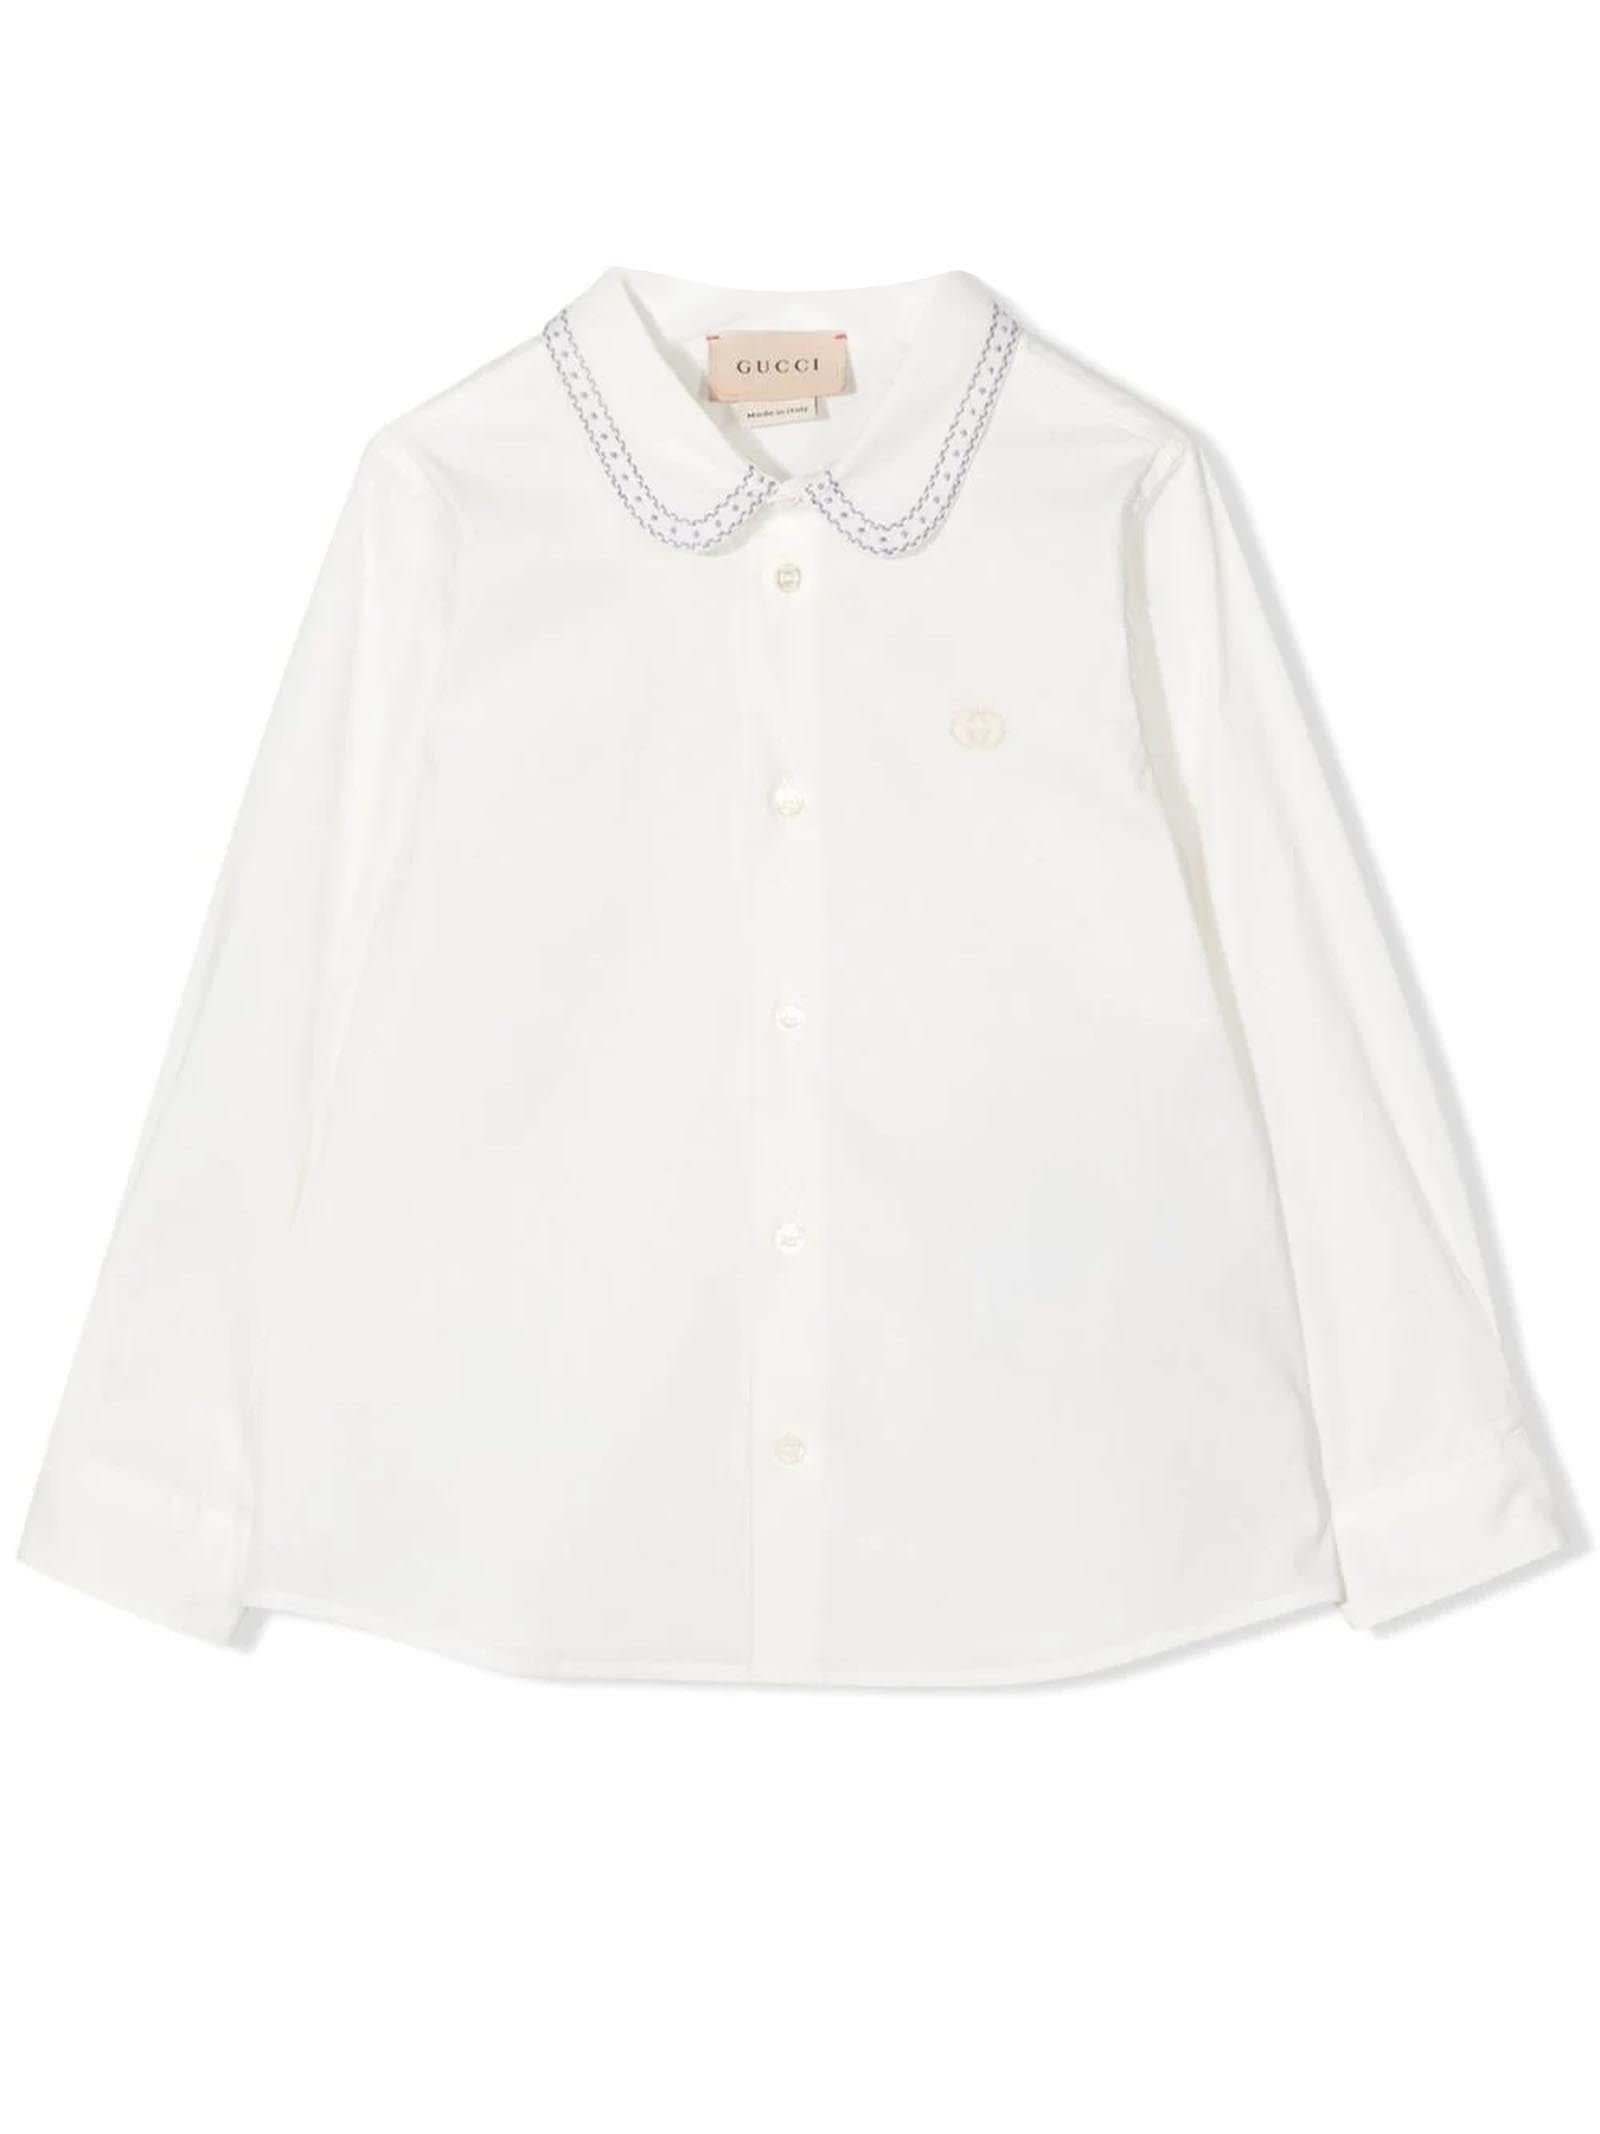 Gucci White Stretch-cotton Shirt